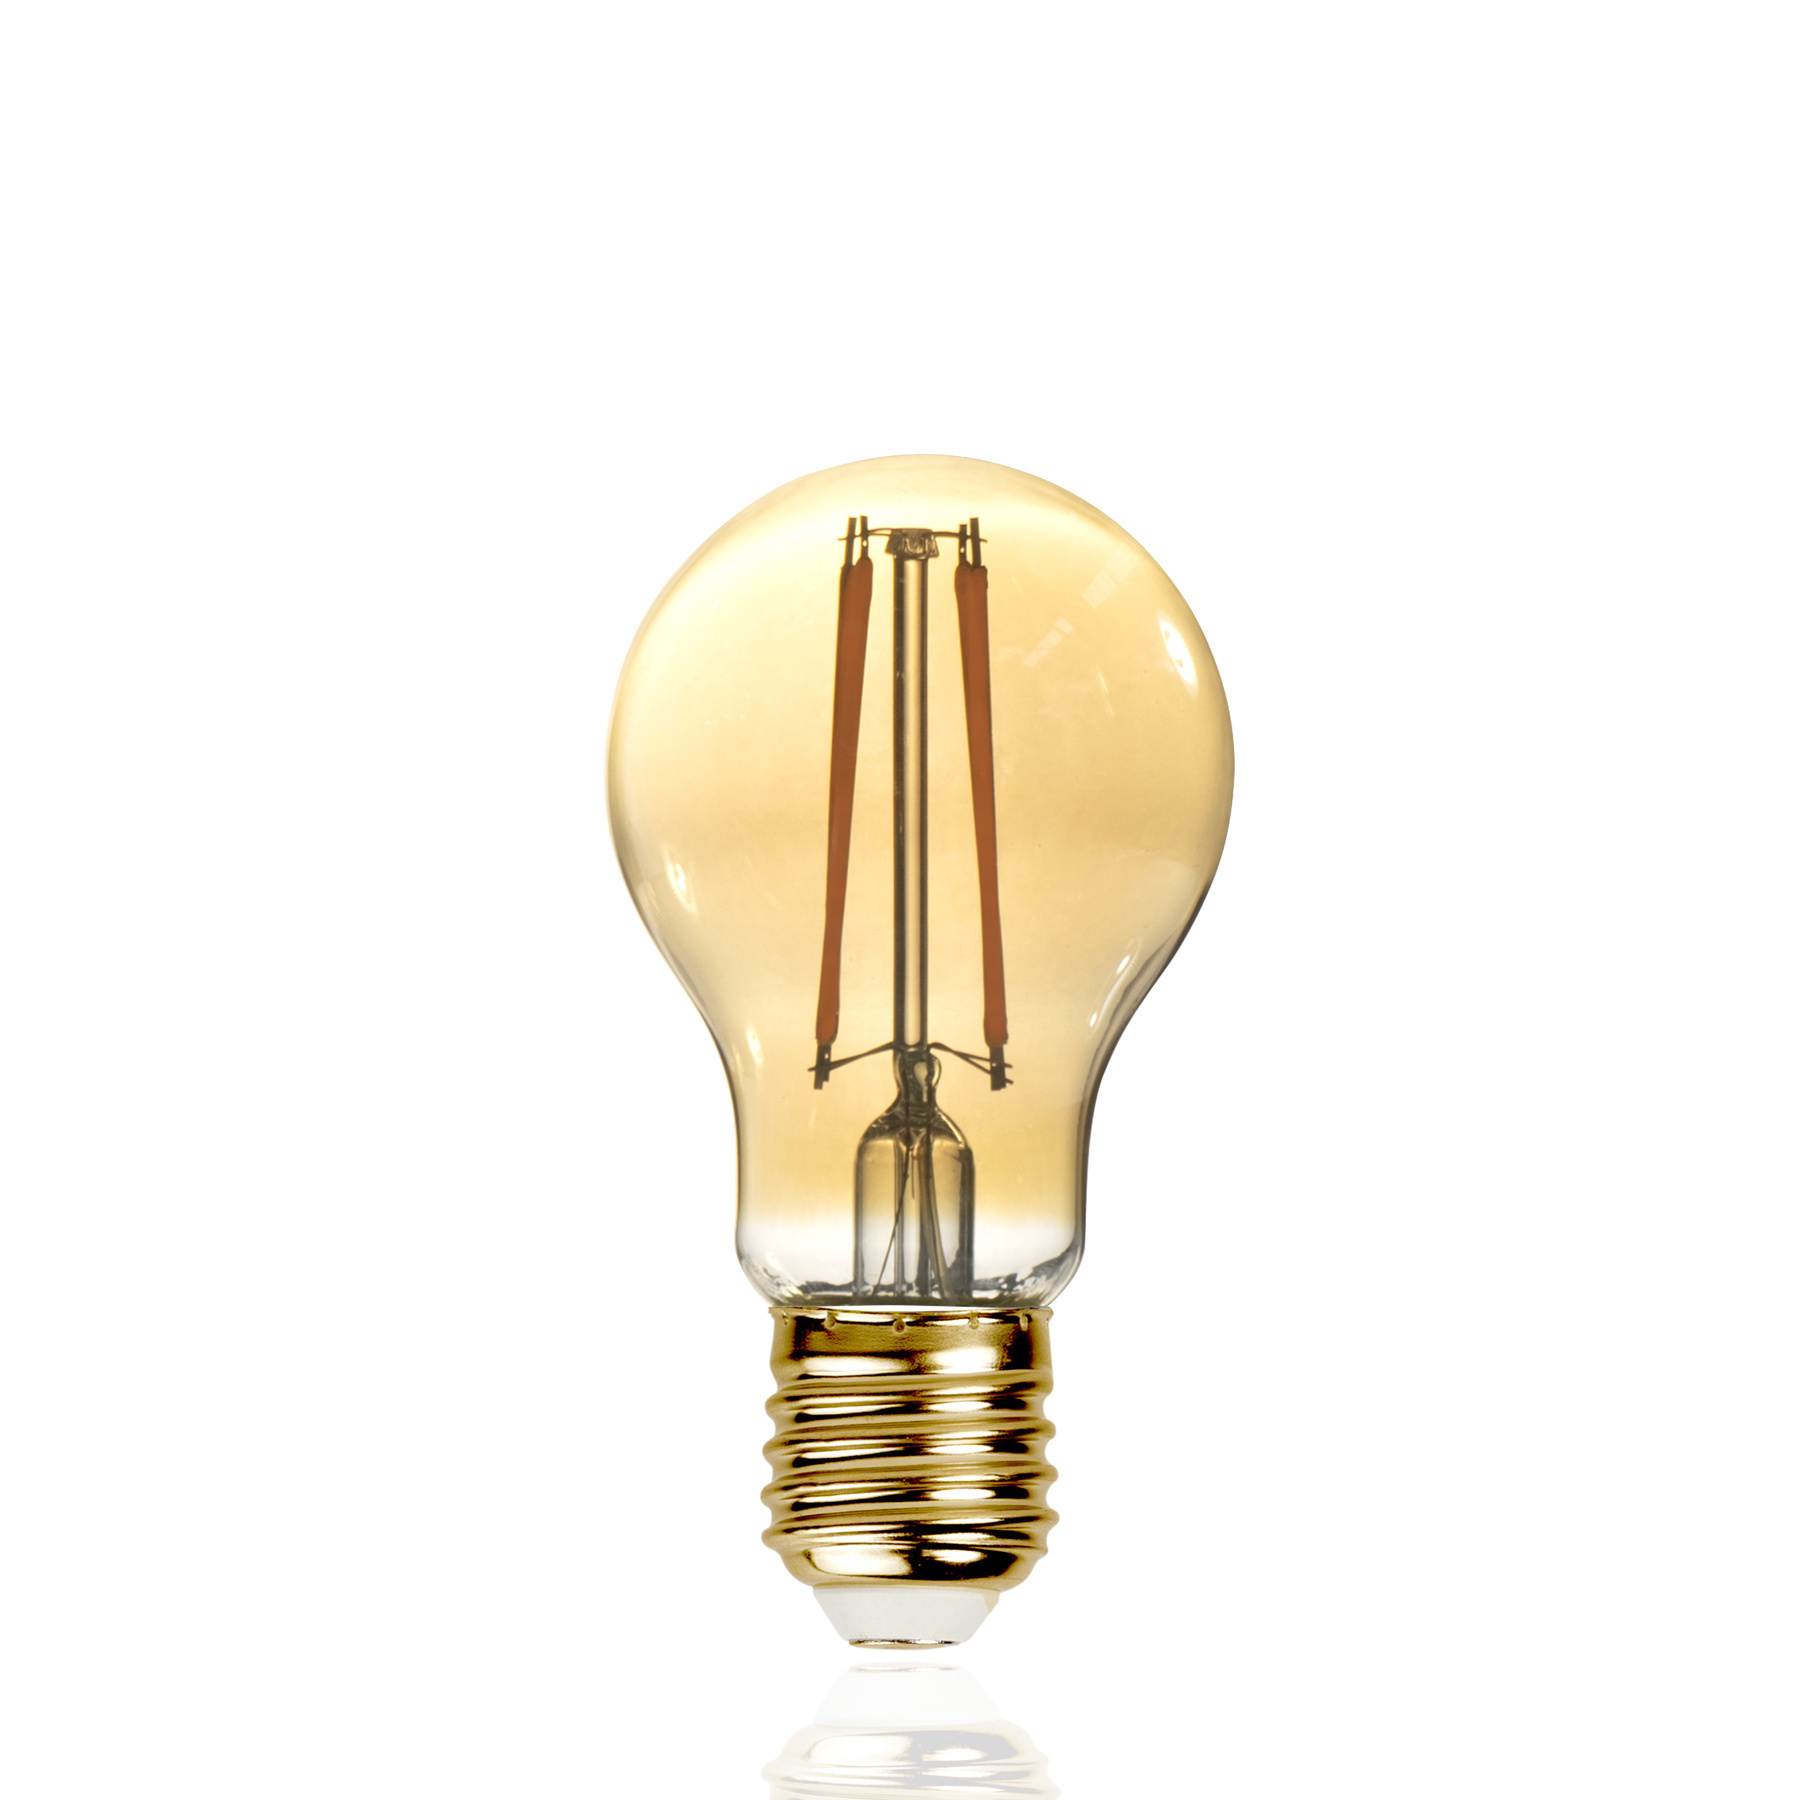 Dimm-Adapter Geeignet für Leuchtmittel: LED-Lampe, Glühlampe